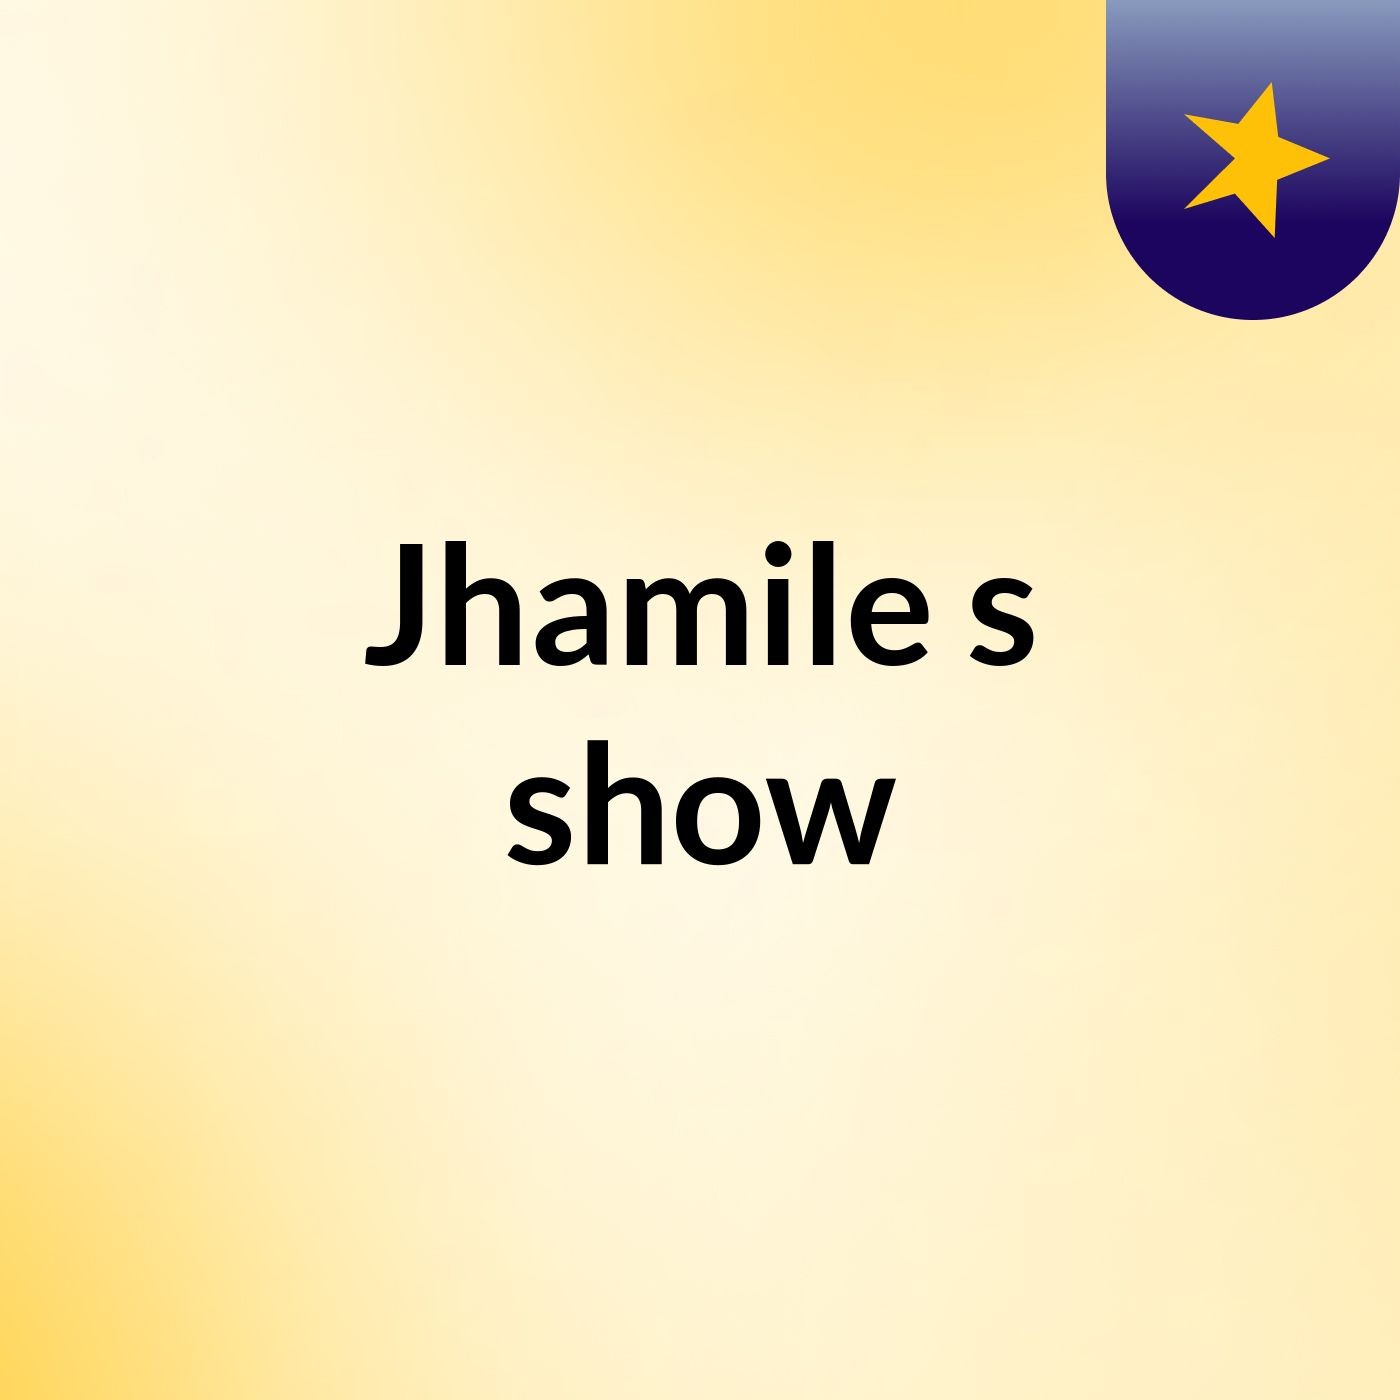 Jhamile's show